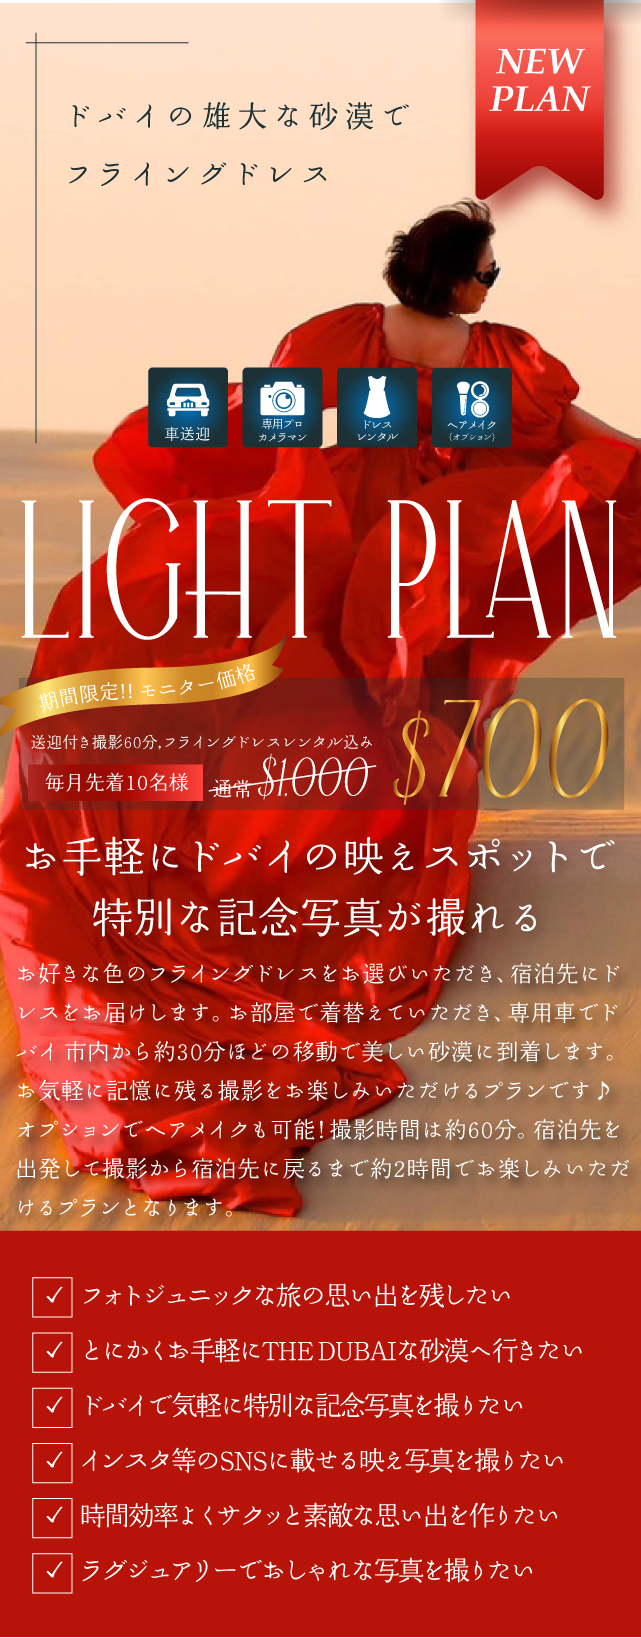 Lightplan_SP